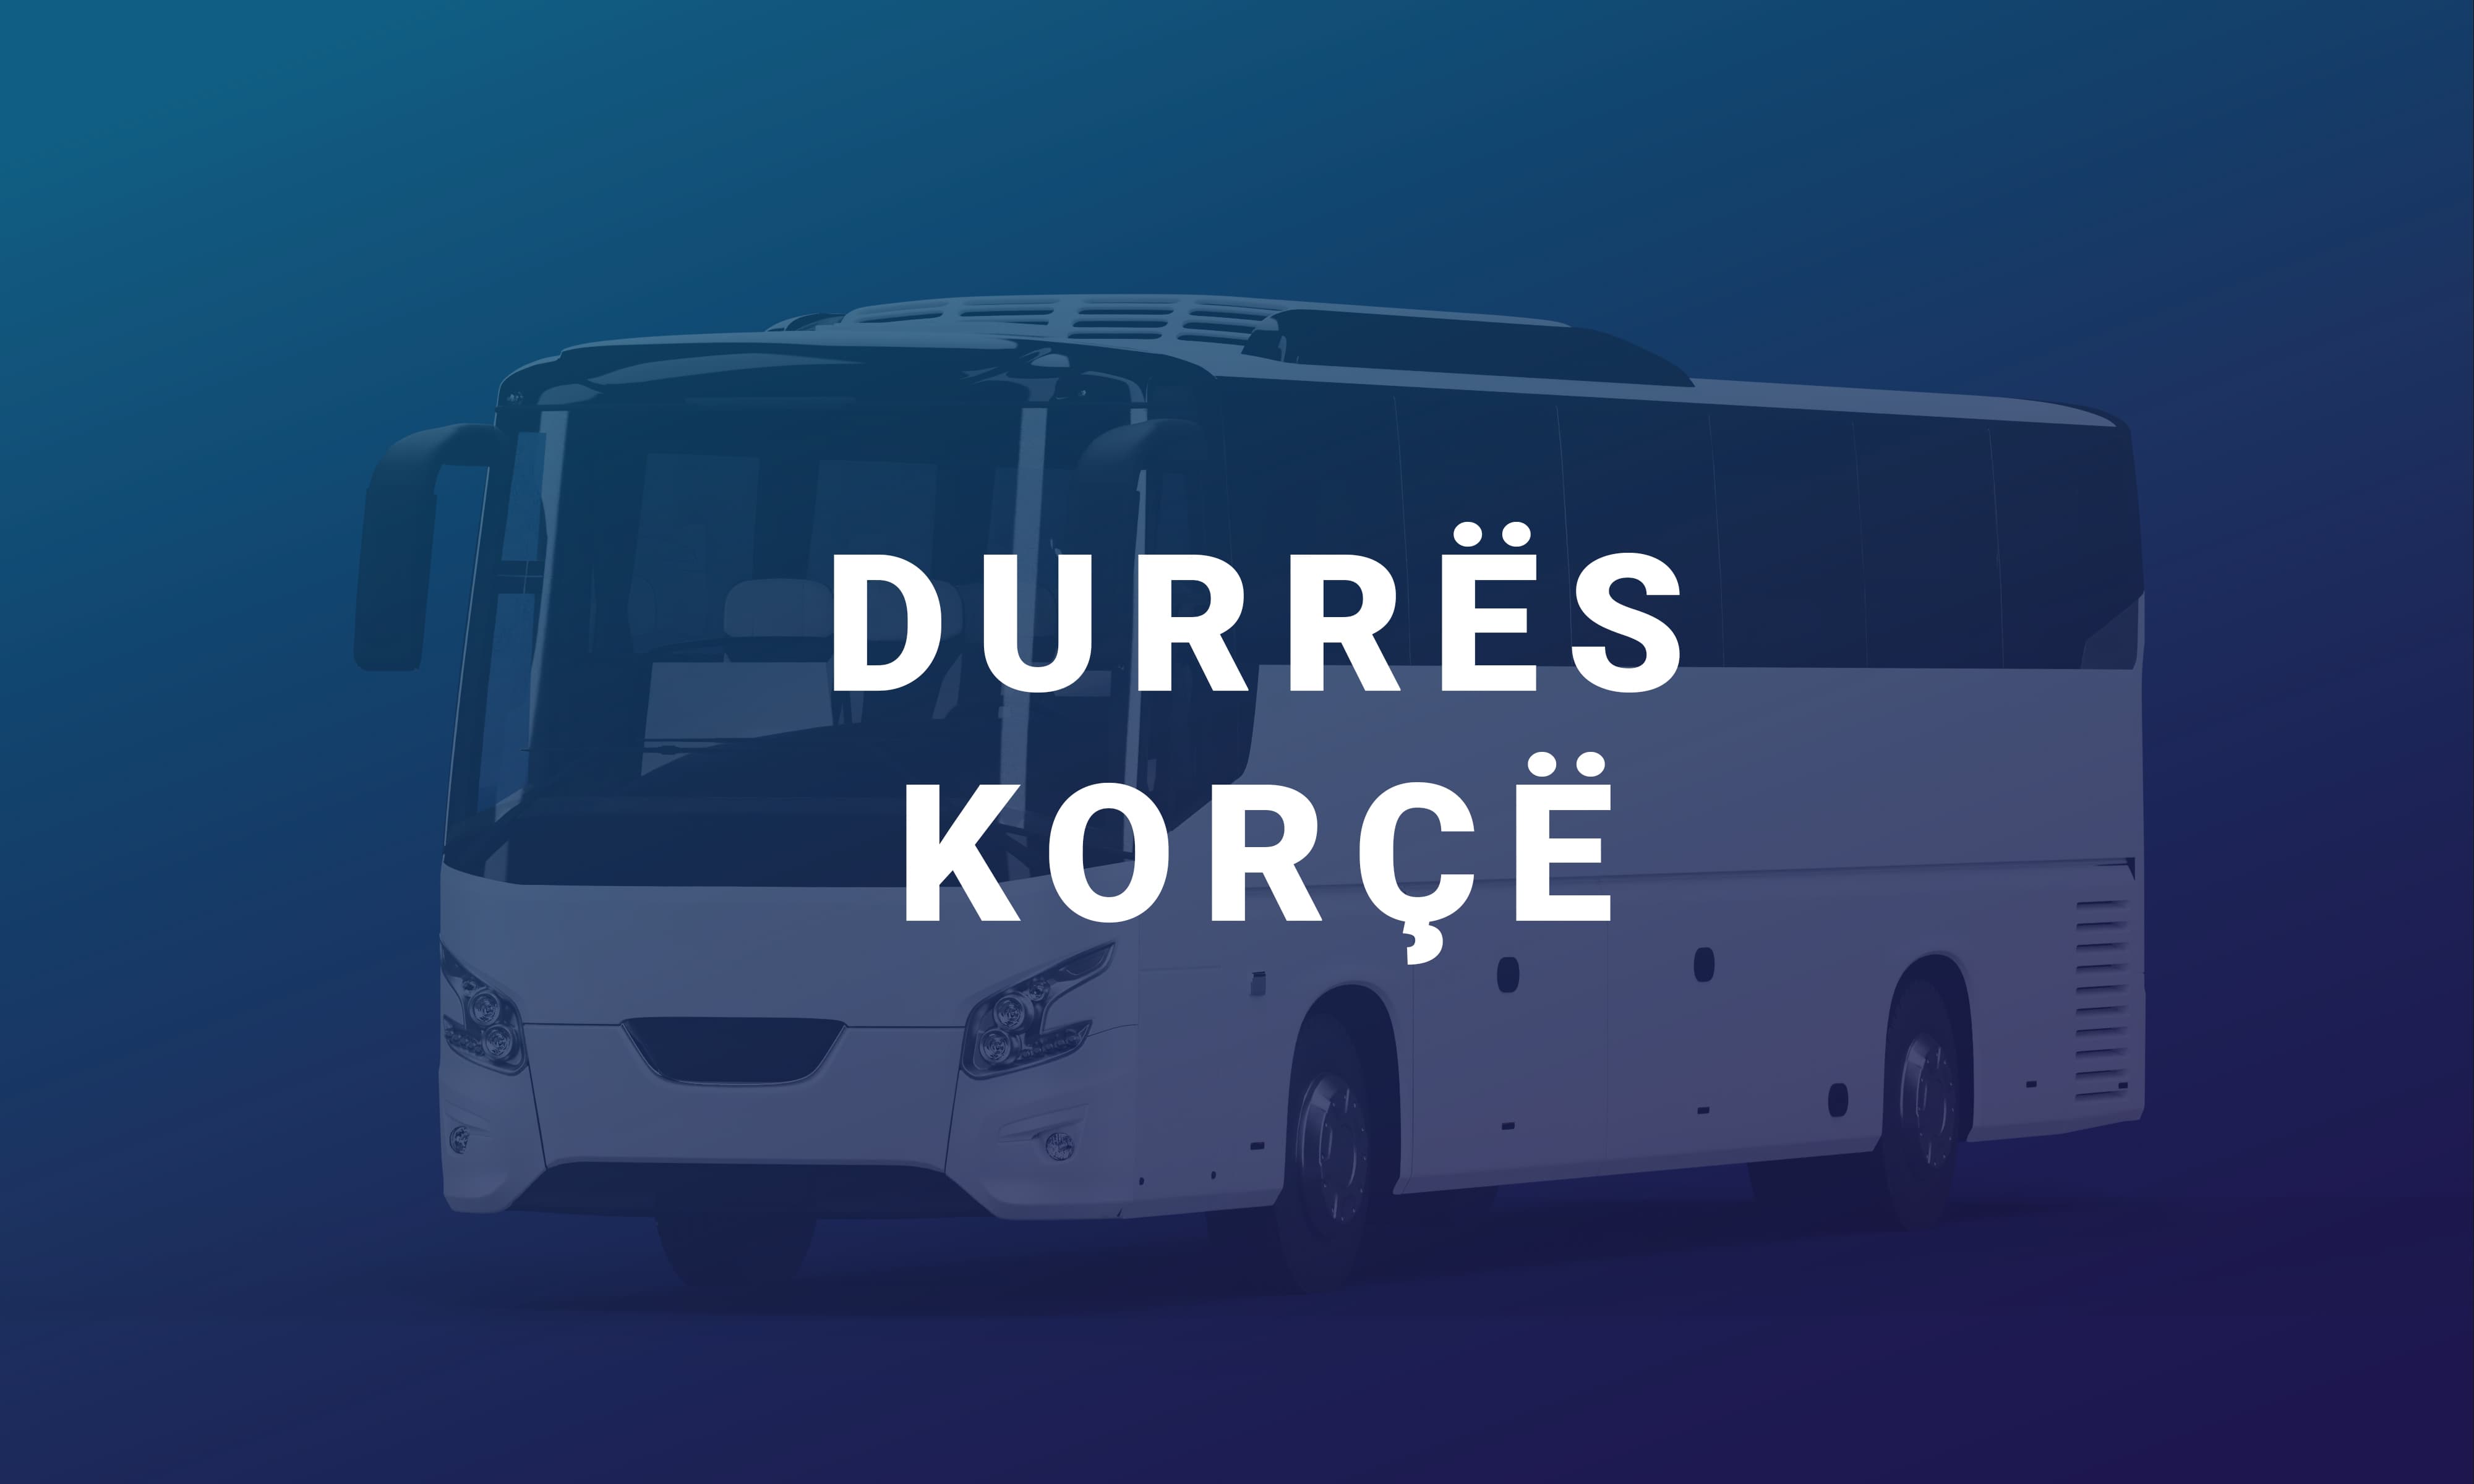 Durrës-Korçë është një linjë ndërqytetase me qendër në Durrës që ofron një shërbim çdo ditë për në Korçë dhe kthim.